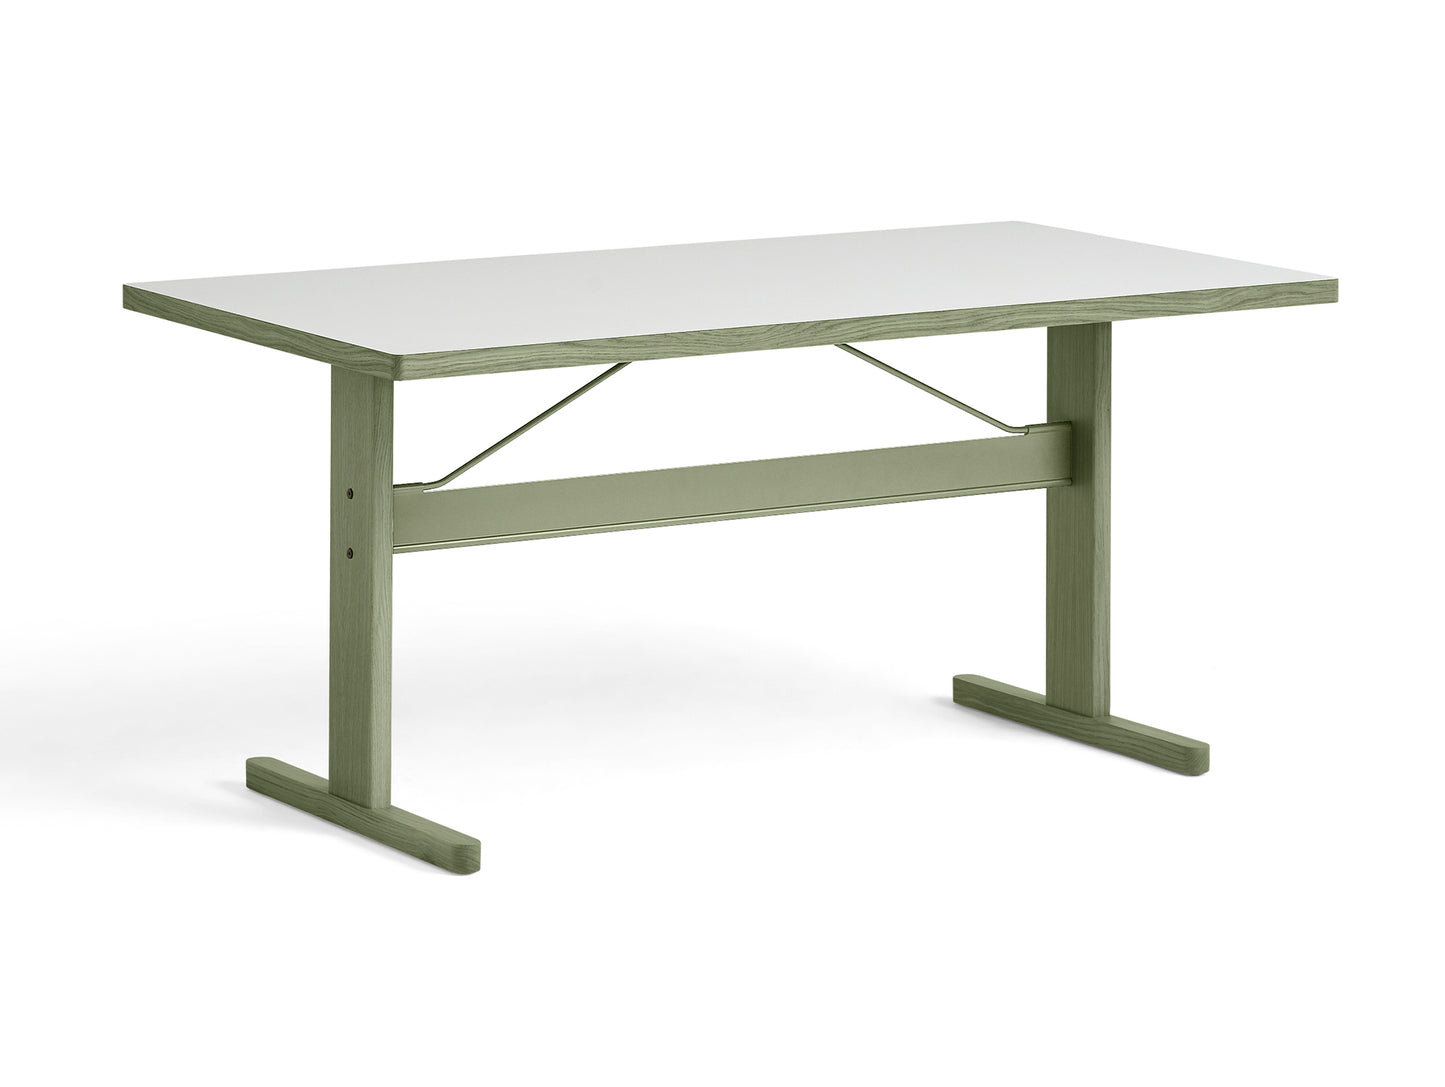 Passerelle テーブル (ラミネートとリノリウムのテーブルトップ)